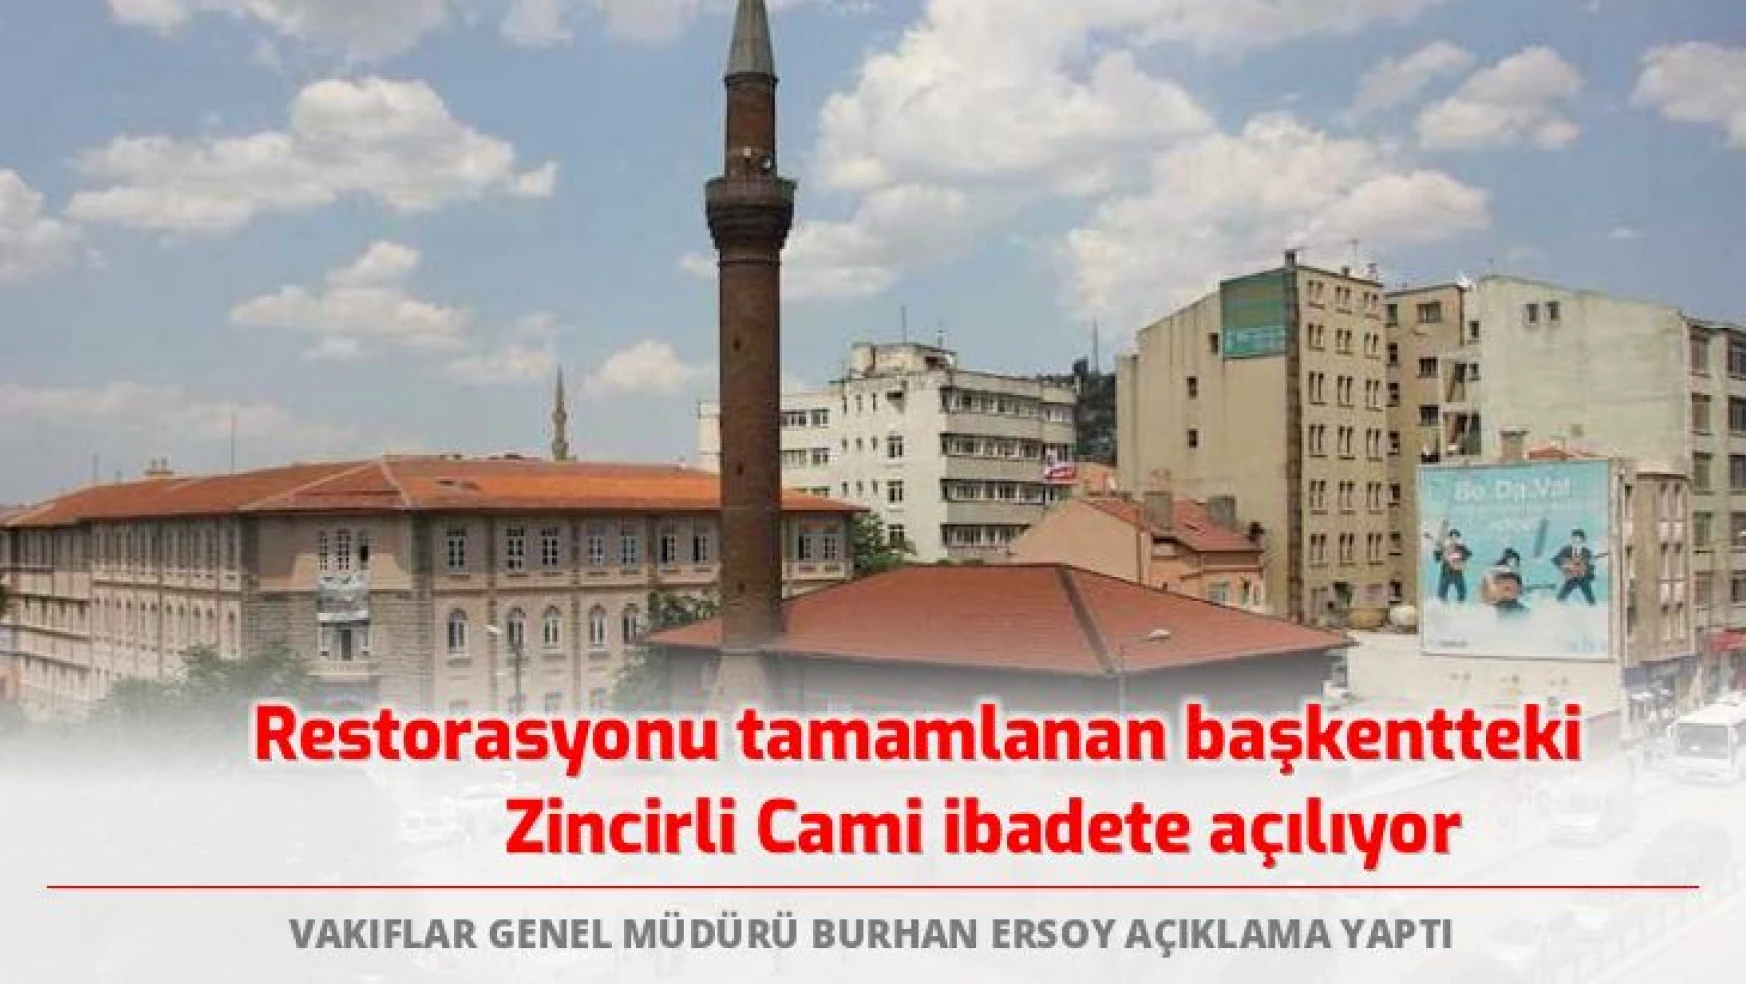 Ankara'daki restorasyonu tamamlanan Zincirli Cami ibadete açılıyor